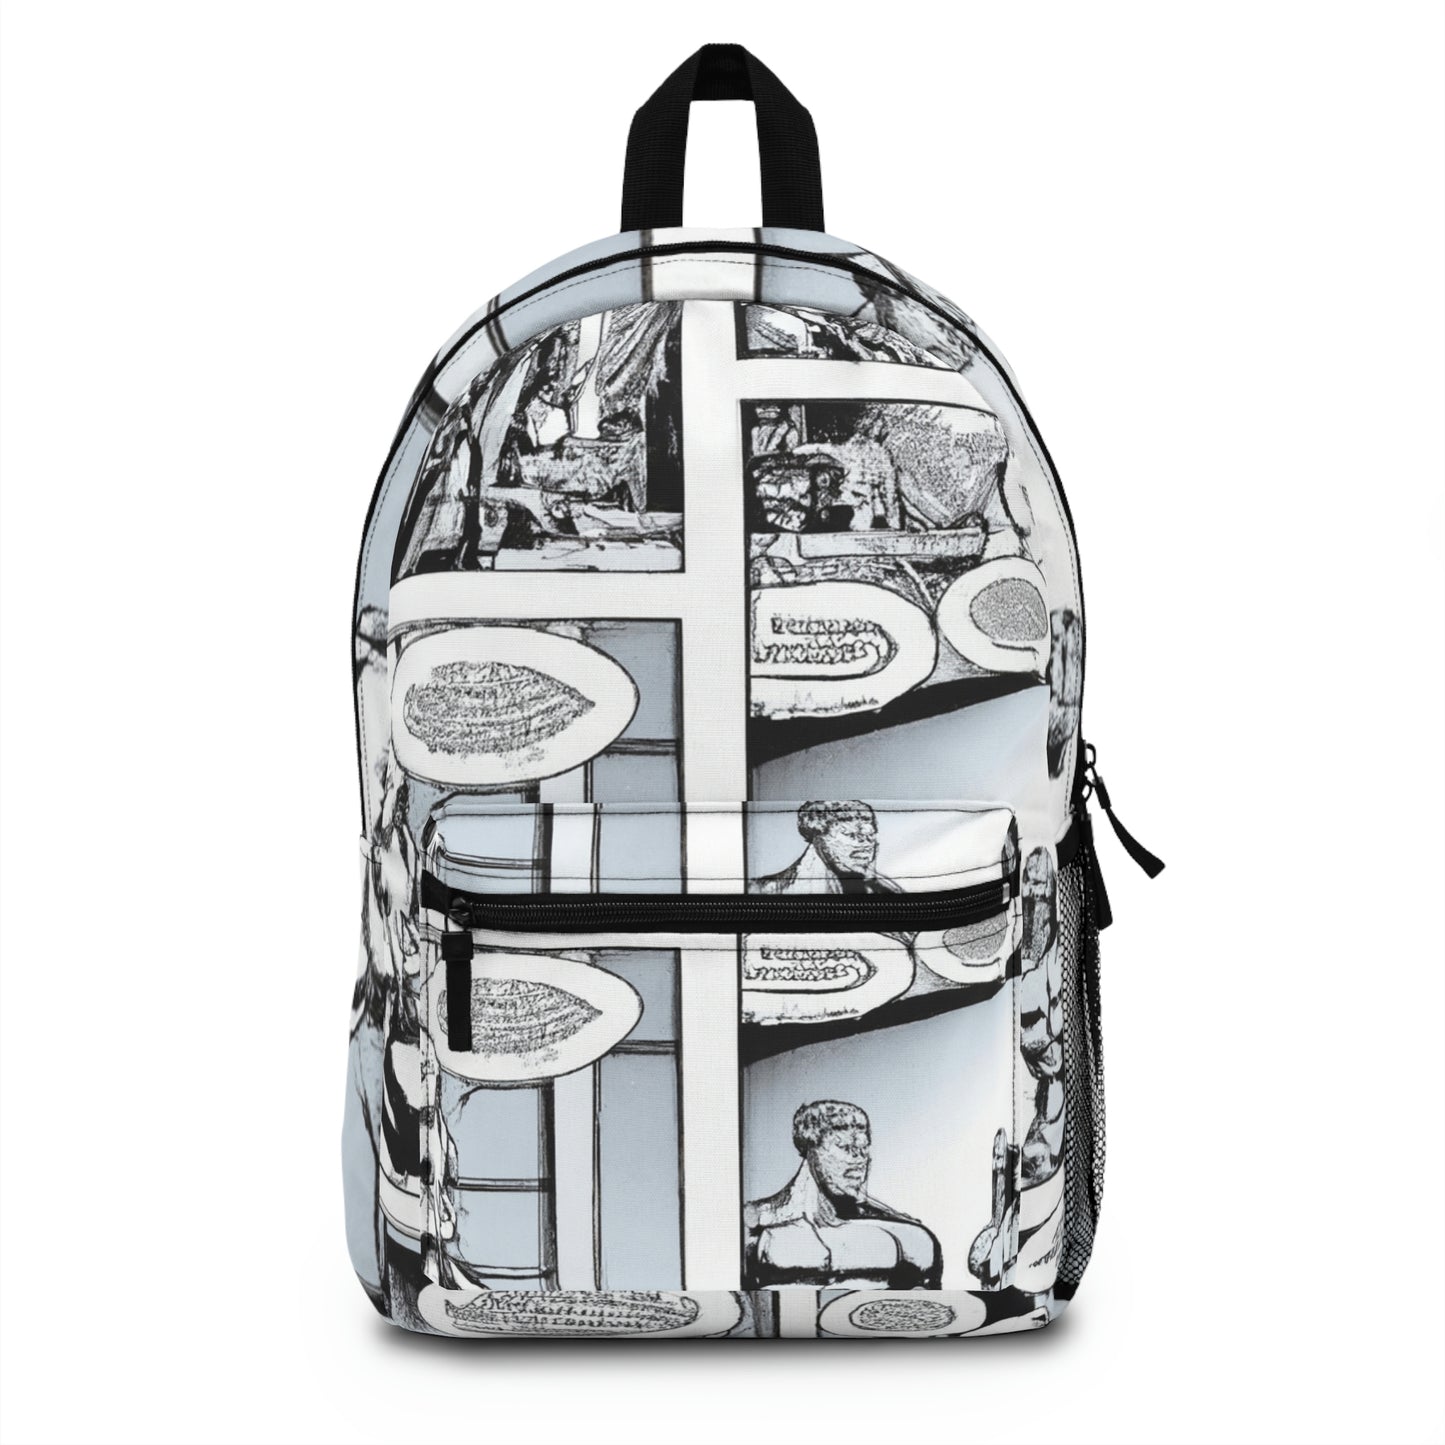 Terra Glower - Comic Book Backpack